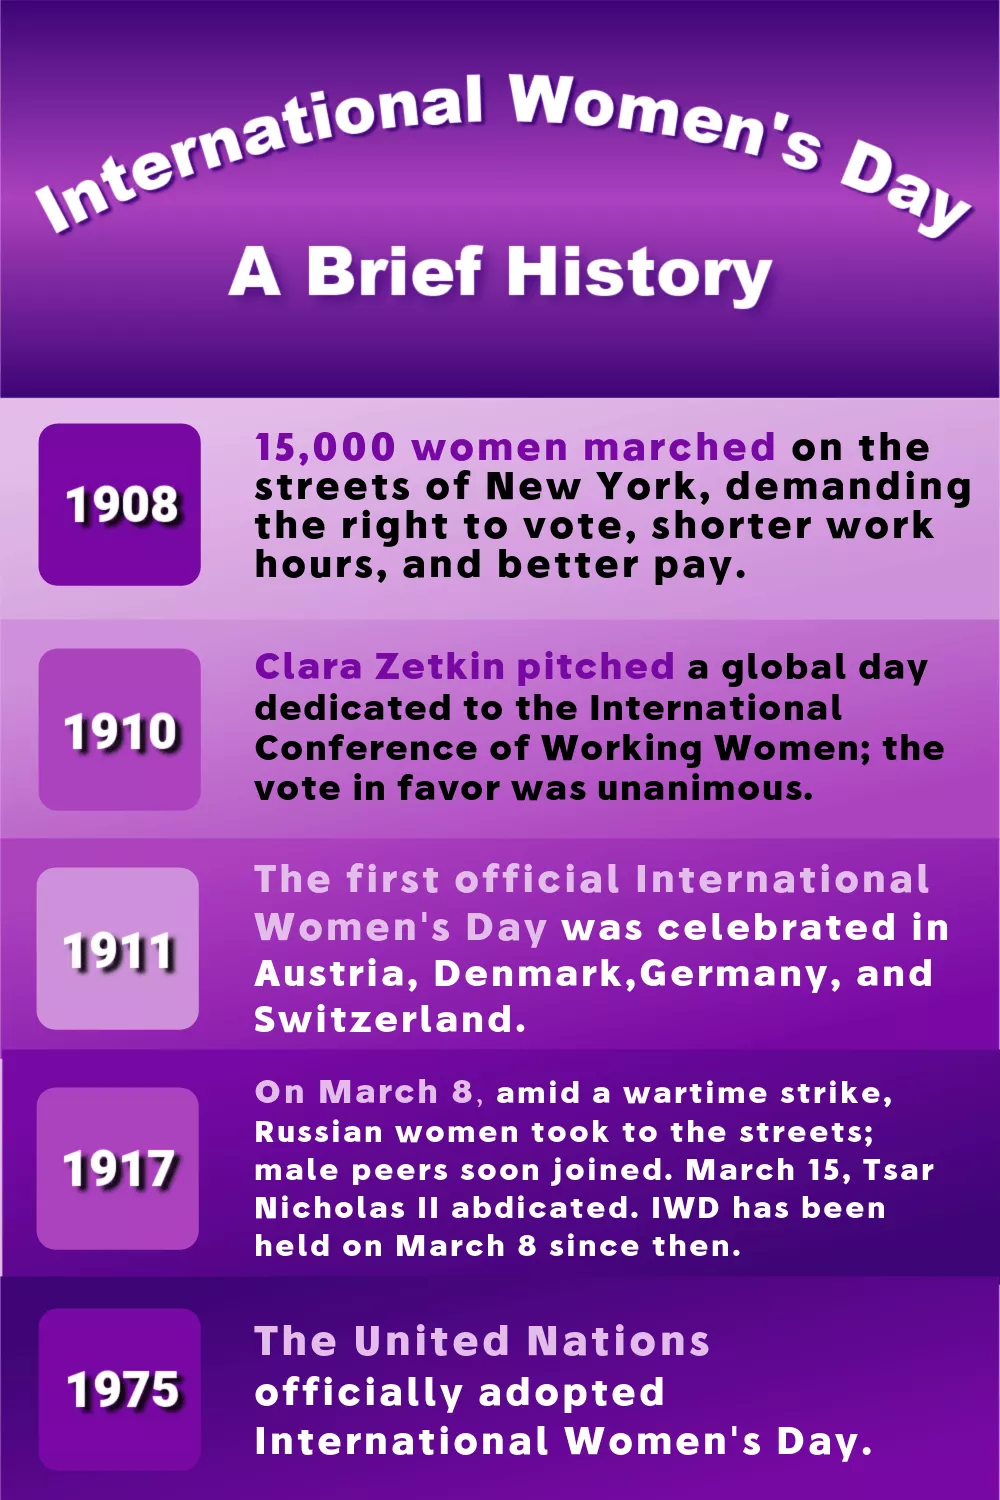 顯示國際婦女節關鍵日期歷史的信息圖。文本：1908 年，15,000 名婦女走上紐約街頭，為爭取選舉權、縮短工作時間和提高工資而遊行。克拉拉·澤特金在國際職業婦女大會之前提出了她的想法，即在哥本哈根設立一個致力於婦女的國際日。代表17個國家的100人一致同意。 1911 年，第一個官方國際婦女節在奧地利、丹麥、德國和瑞士舉行。聯合國於 1975 年正式採用 IWD。直到 1917 年，在彼得格勒的戰時罷工中，3 月 8 日，俄羅斯婦女走上街頭，隨後男性同齡人也加入了 IWD。 1917年3月15日，沙皇尼古拉二世退位。